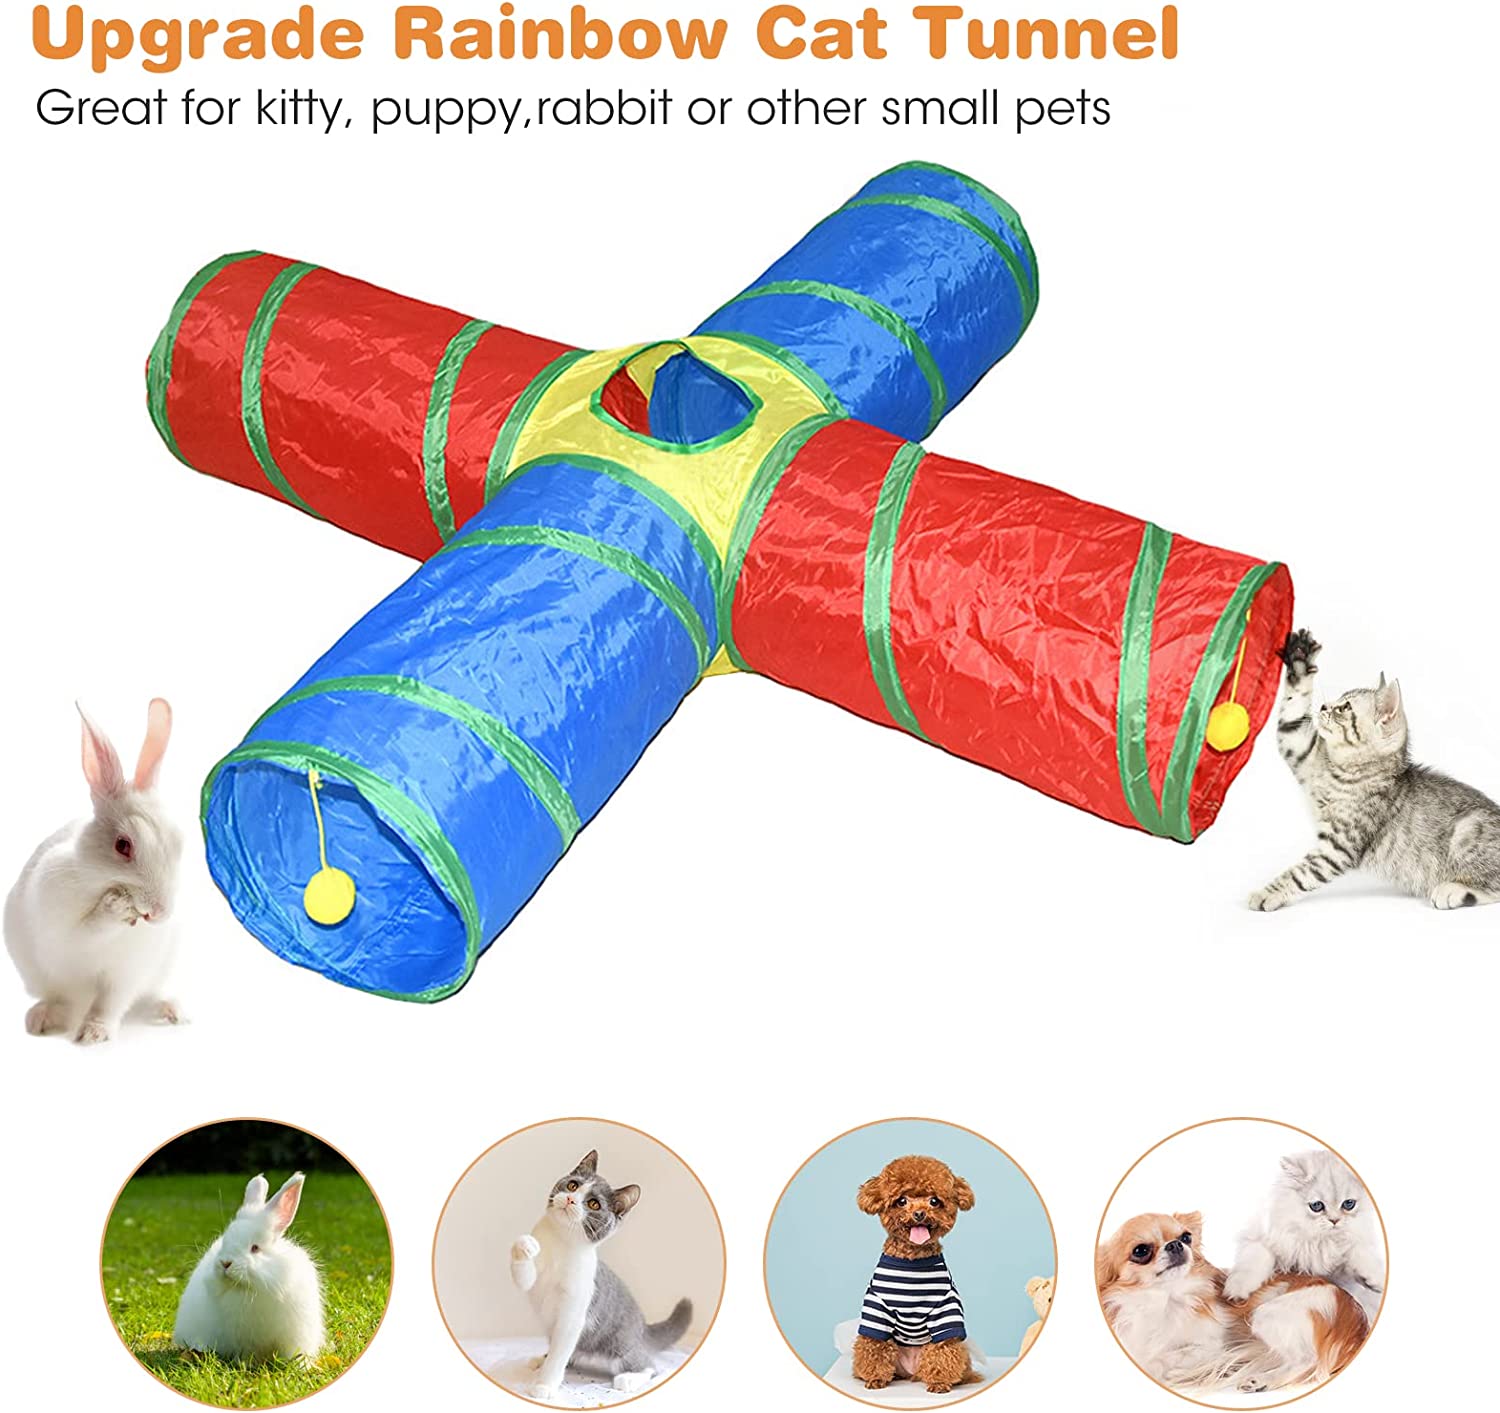 】تونل بازی گربه تاشو را می توان به راحتی جمع کرد یا در چند ثانیه باز کرد، به راحتی قابل نگهداری و قابل حمل در هنگام بیرون رفتن یا مسافرت است